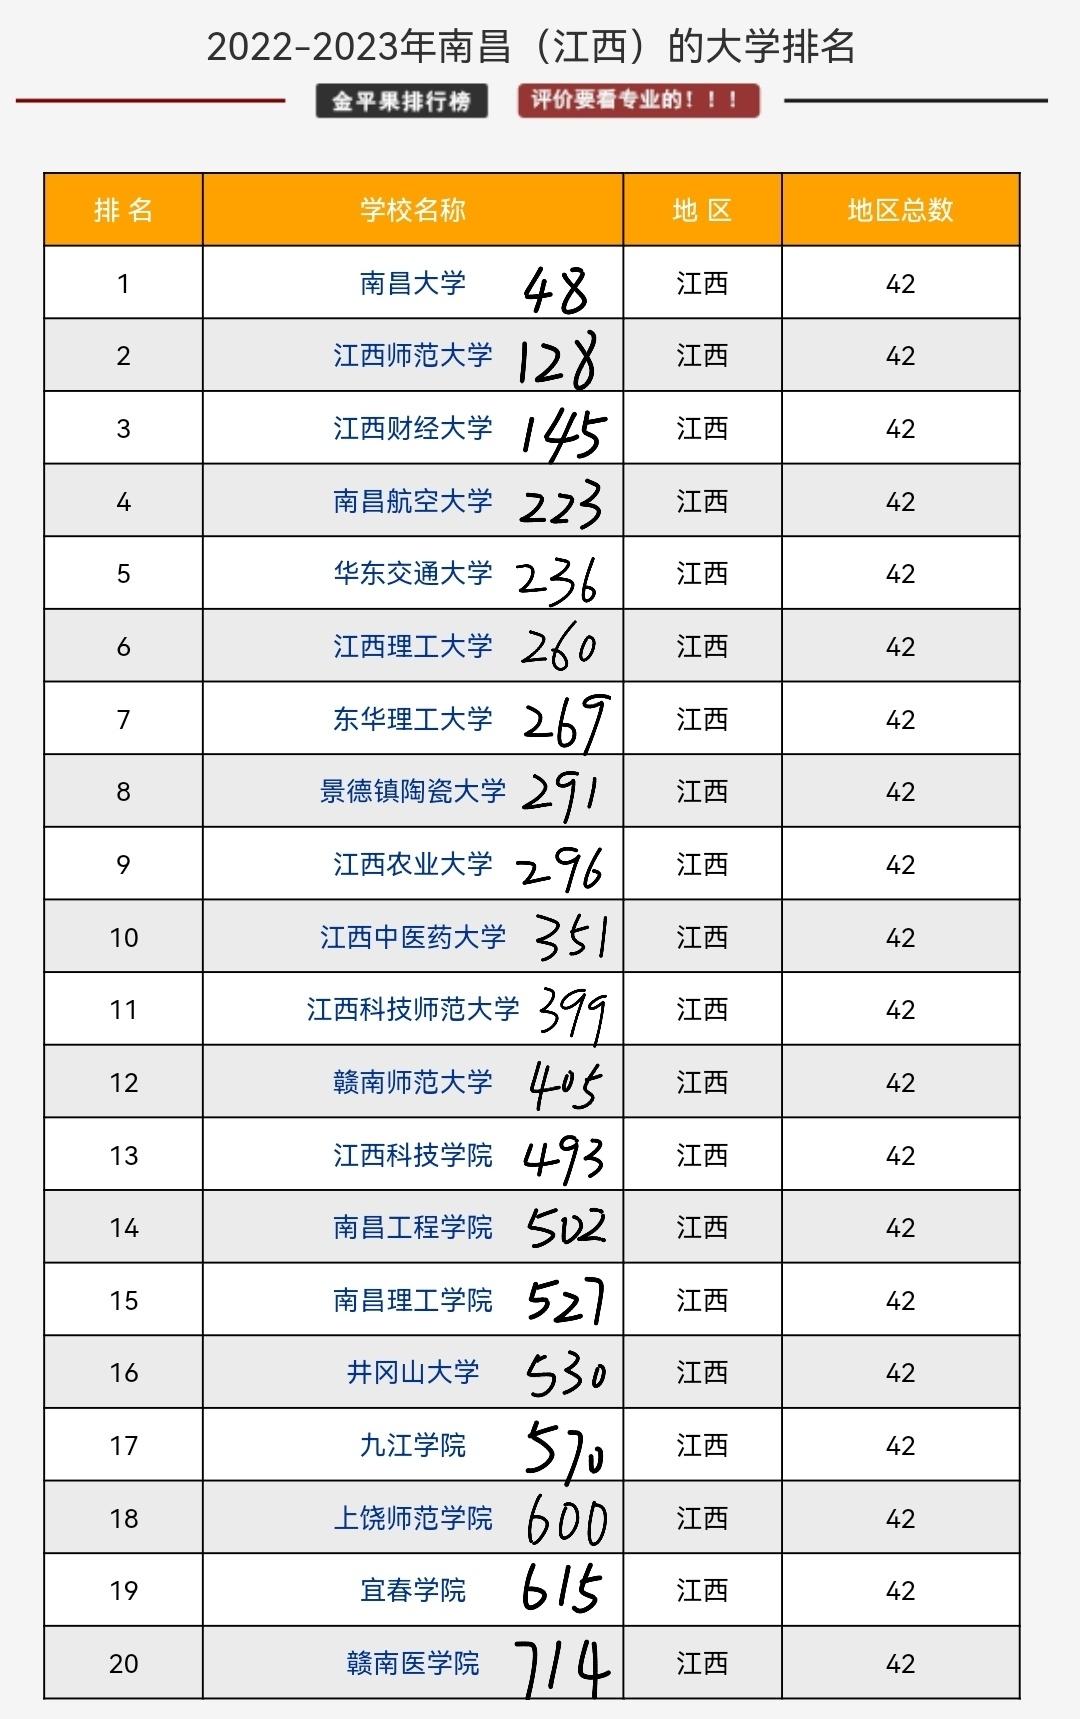 【2020高考分数排名系列之二：区域版】北京、上海、东部、中西部名校排名陆续出炉 - 知乎